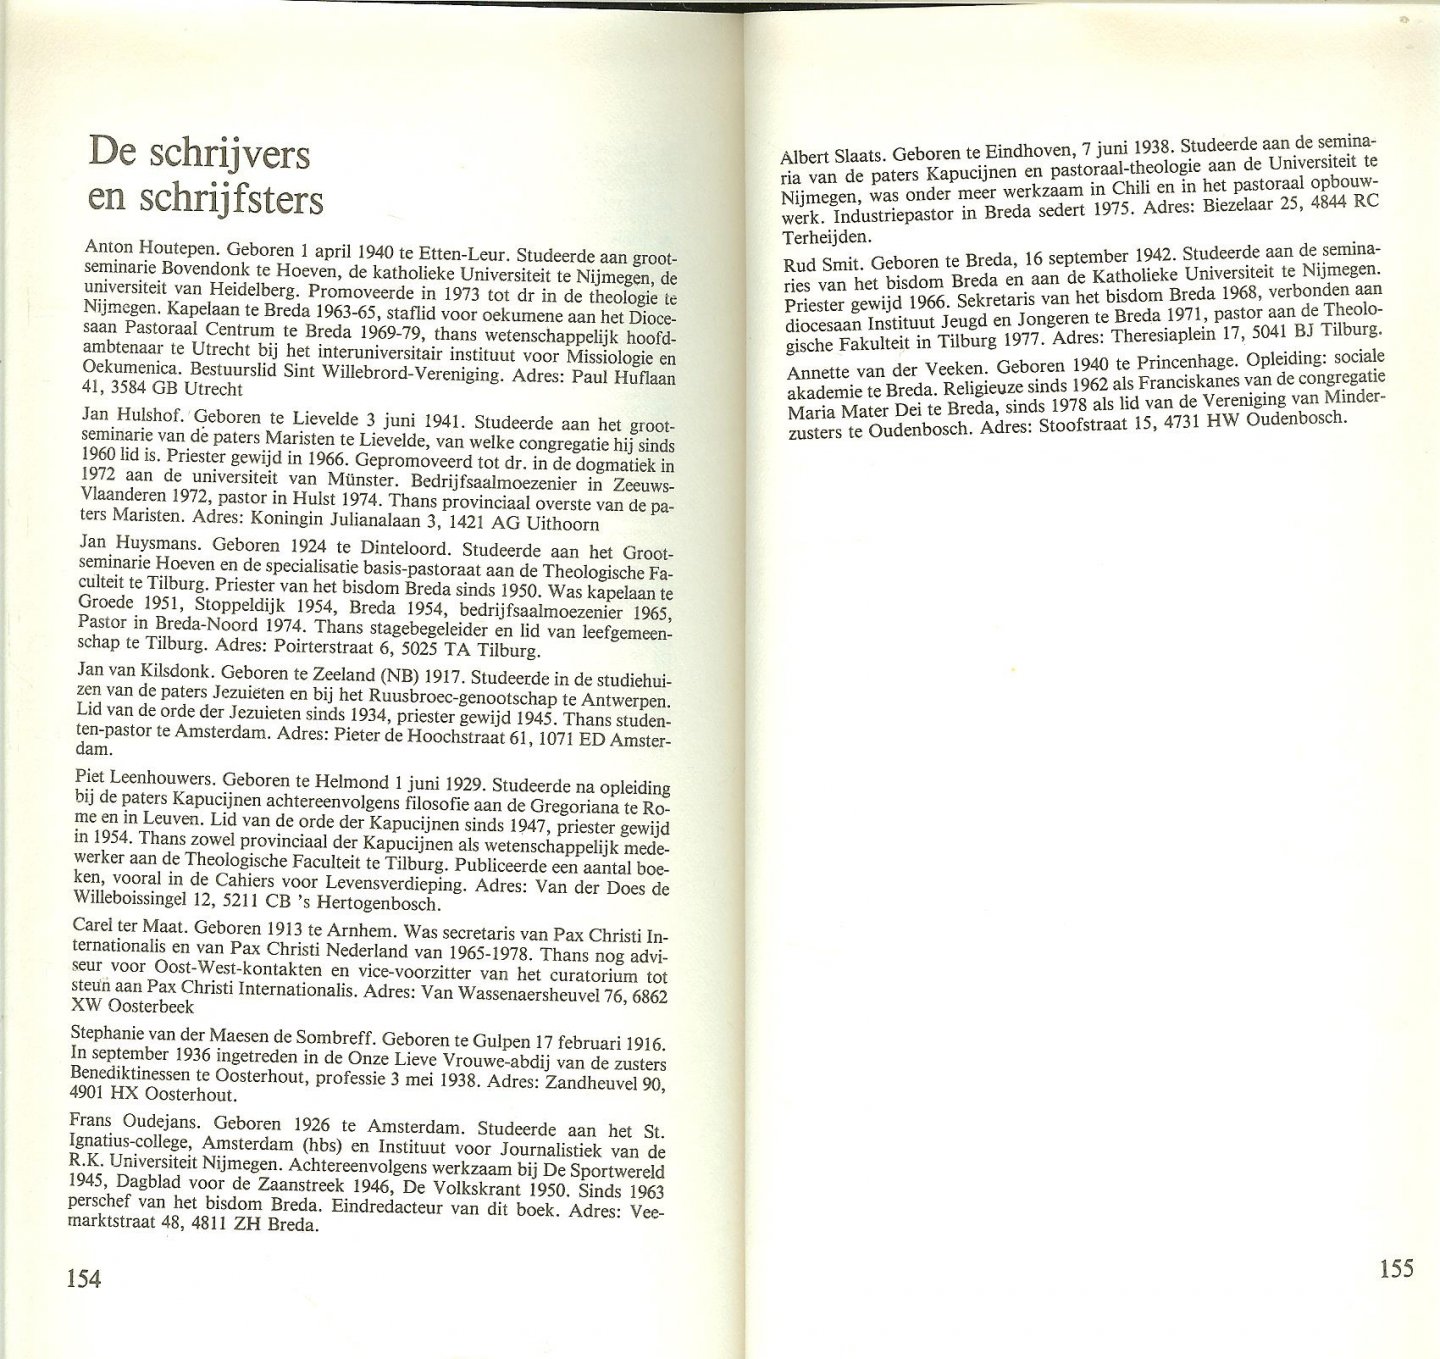 Blommerde, Anton en  Kees Janssens, met  Frans Oudejans  & Bisschop H. Ernst uit 1978 - Tussen gisteren en morgen Feestboek voor een Bisschop